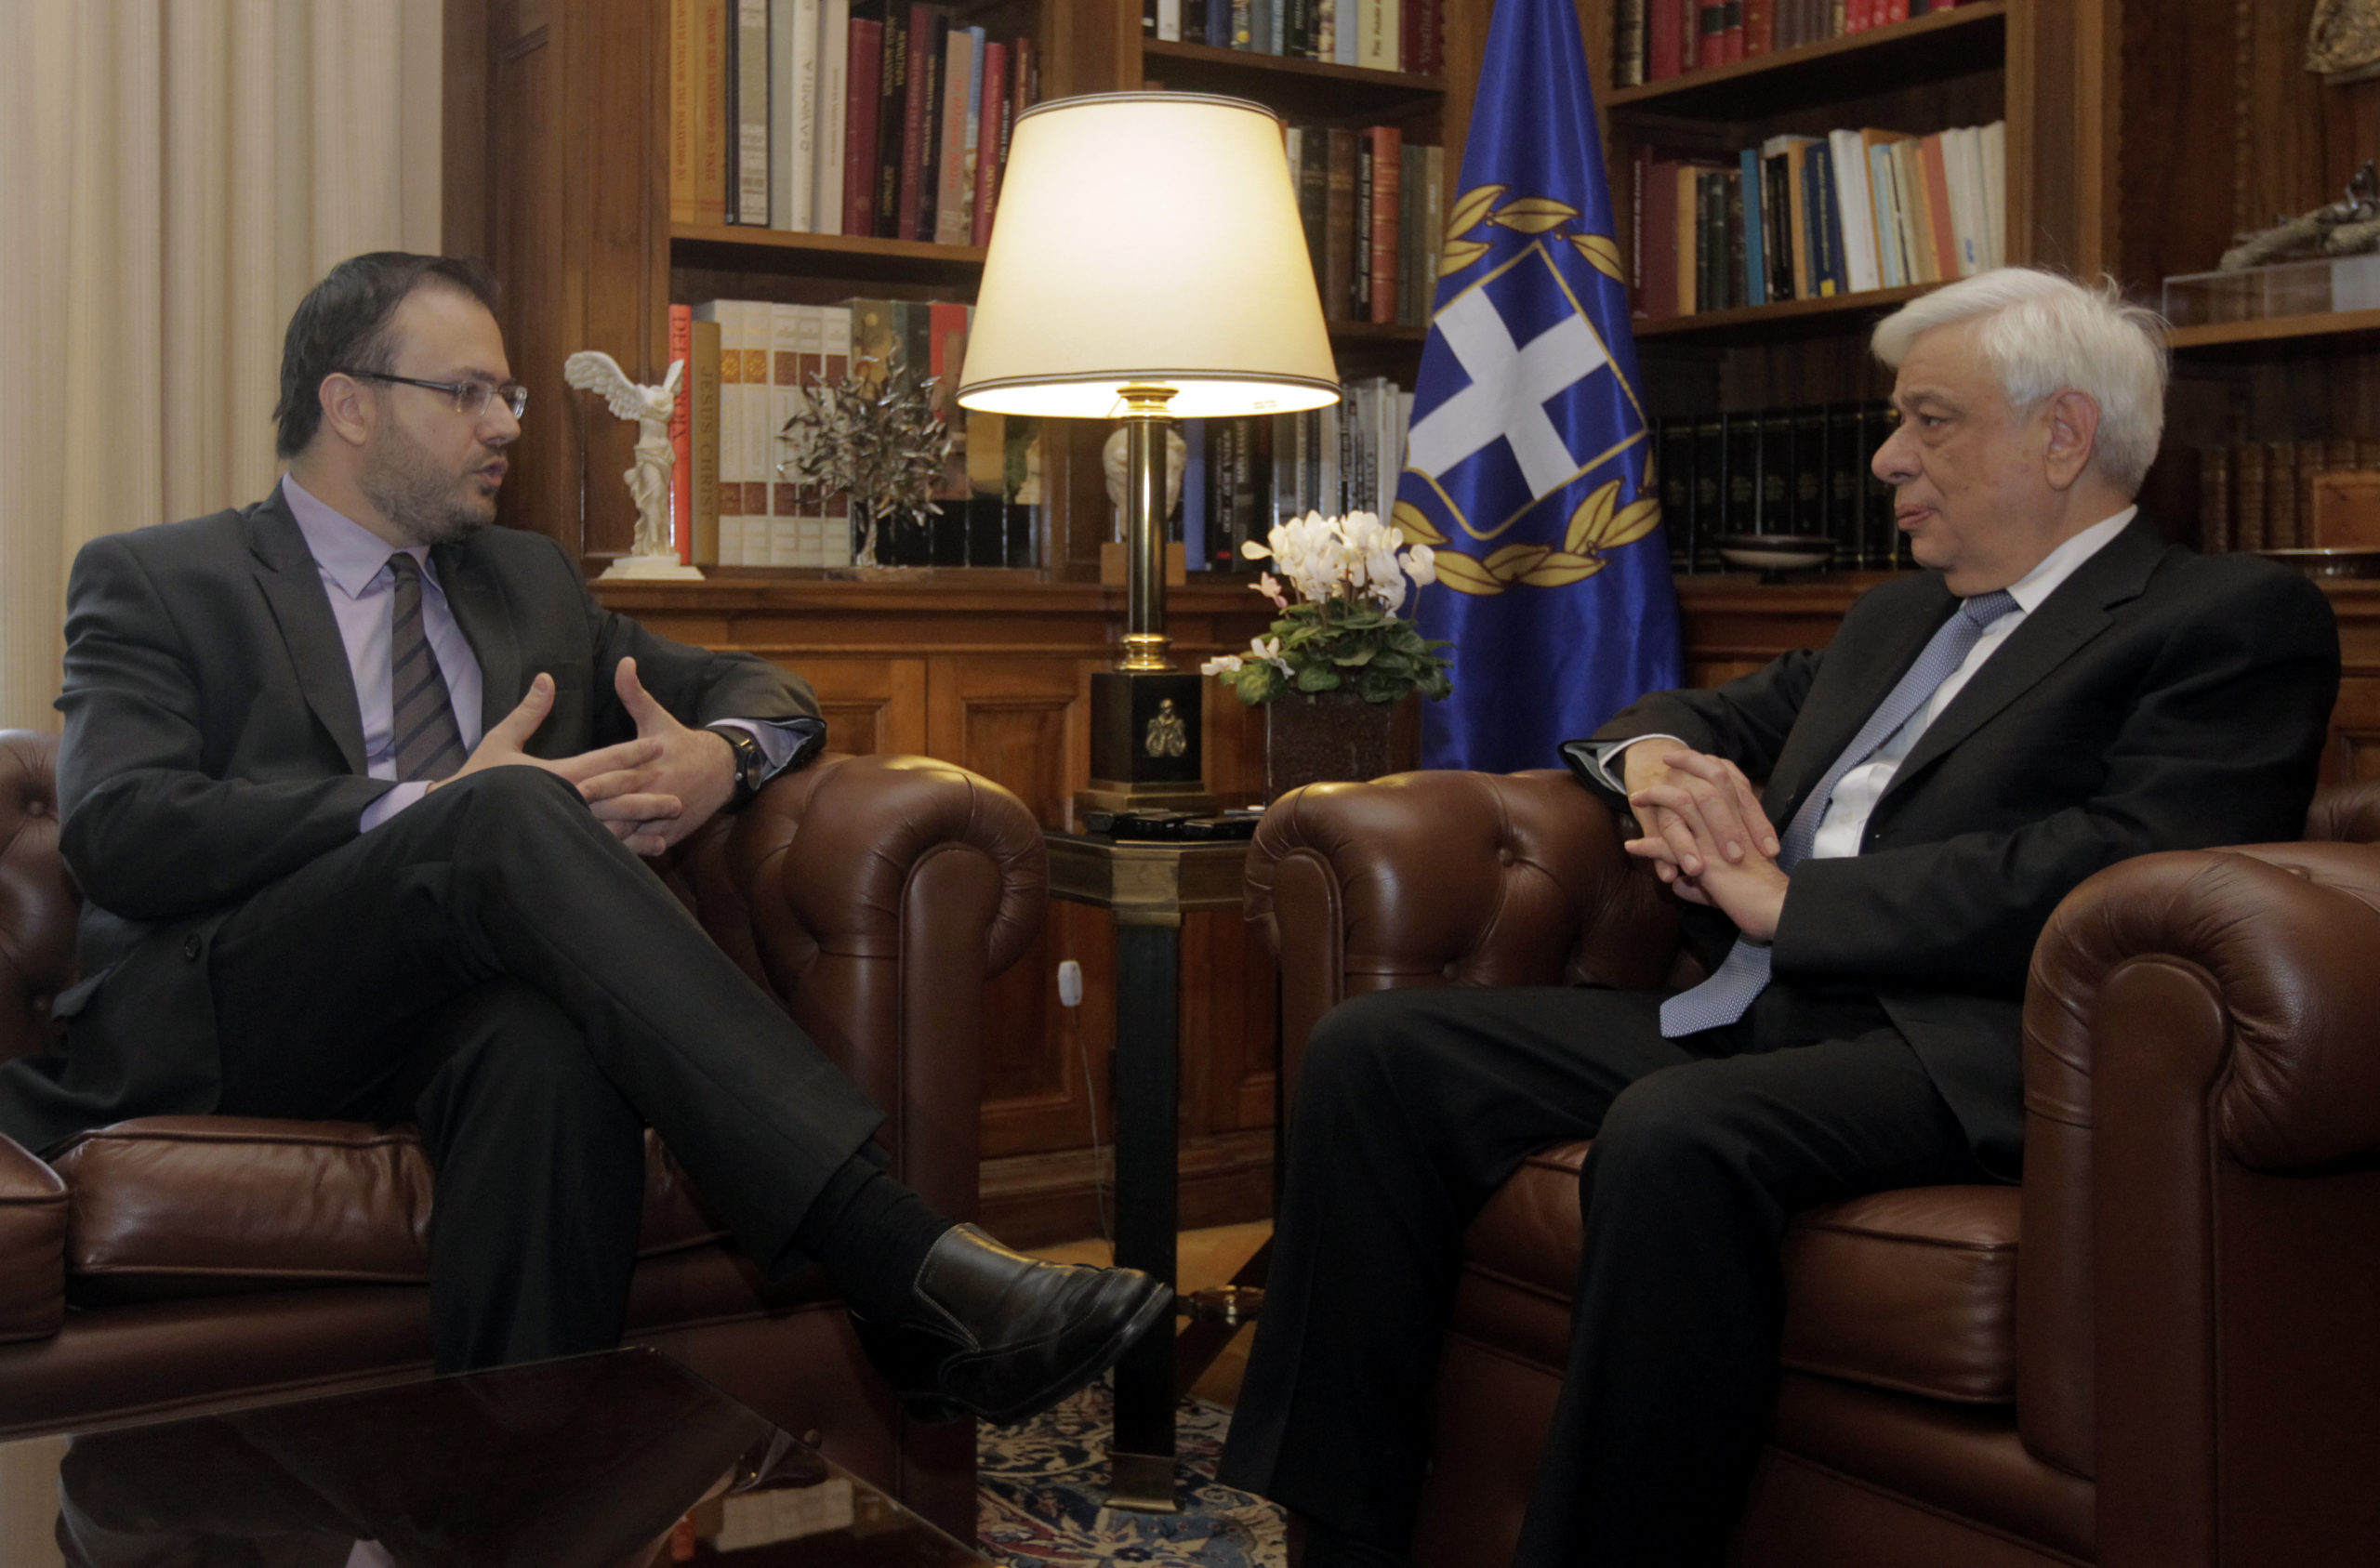 Παυλόπουλος: Η συνεννόηση στα μεγάλα και σημαντικά καταξιώνει τις πολιτικές ηγεσίες